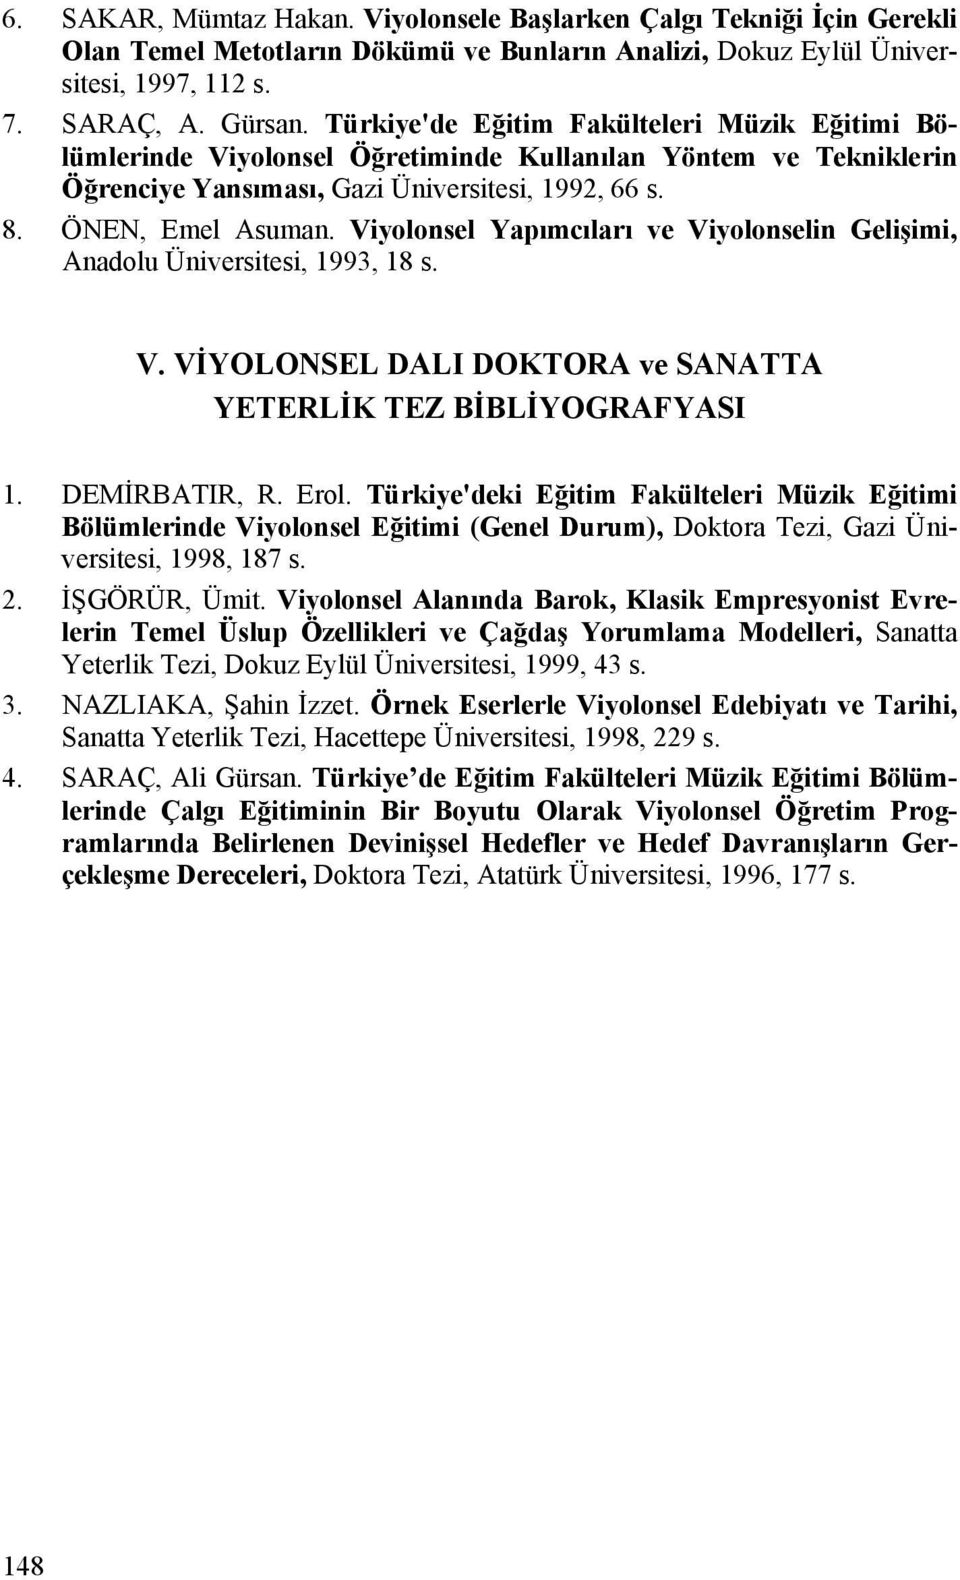 Viyolonsel Yapımcıları ve Viyolonselin Gelişimi, Anadolu Üniversitesi, 1993, 18 s. V. VİYOLONSEL DALI DOKTORA ve SANATTA YETERLİK TEZ BİBLİYOGRAFYASI 1. DEMİRBATIR, R. Erol.